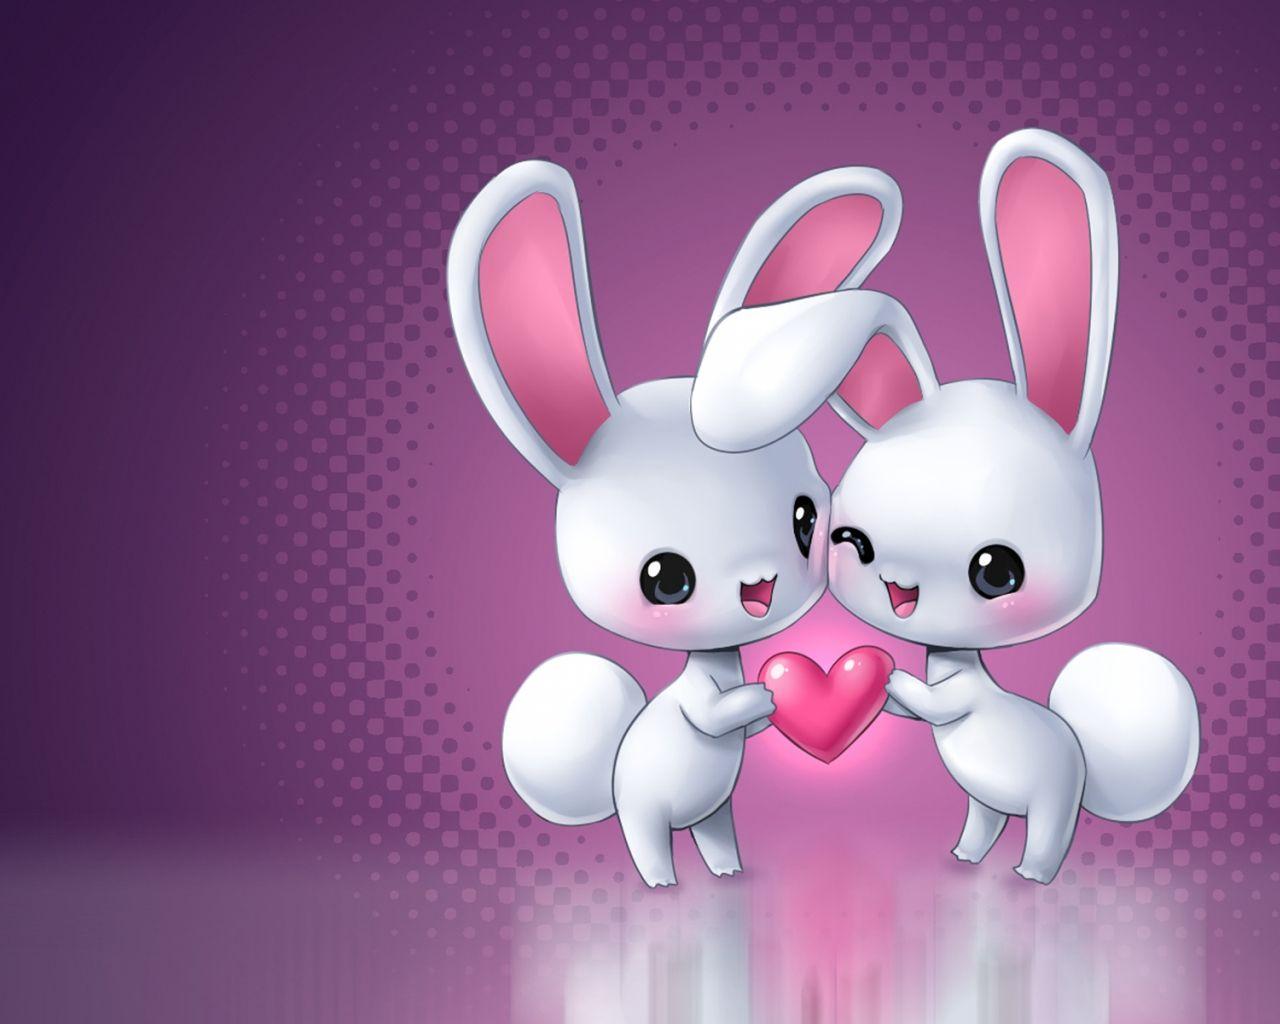 In Love Cartoon Bunnies Wallpaper 1280x1024. Download wallpaper page